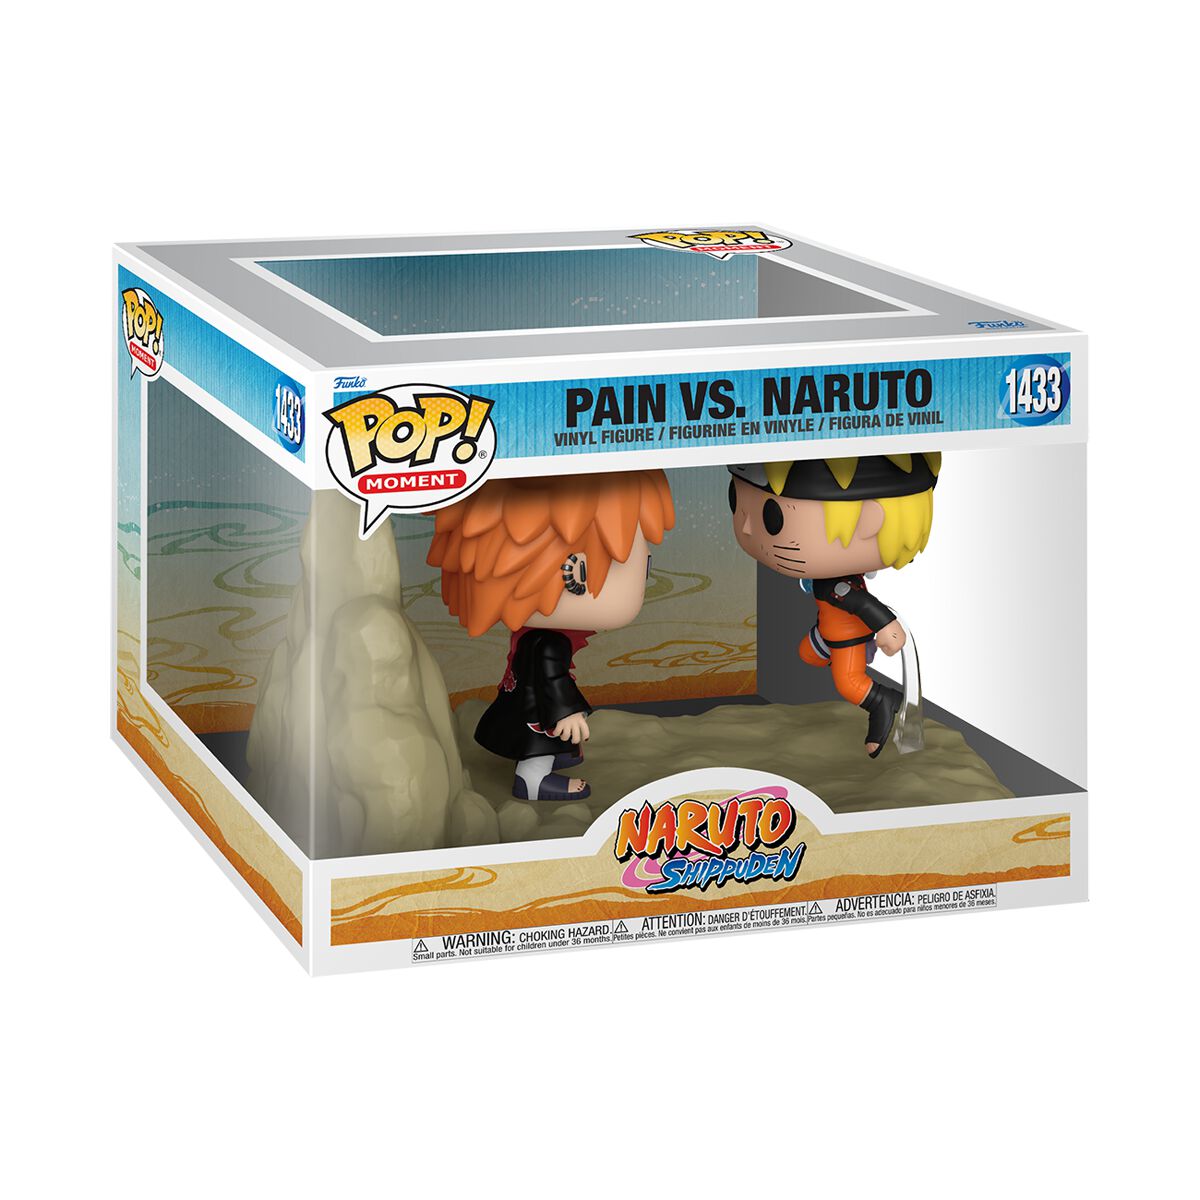 Naruto - Pain vs. Naruto (Pop! Moment) Vinyl Figur 1433 - Funko Pop! Figur - multicolor